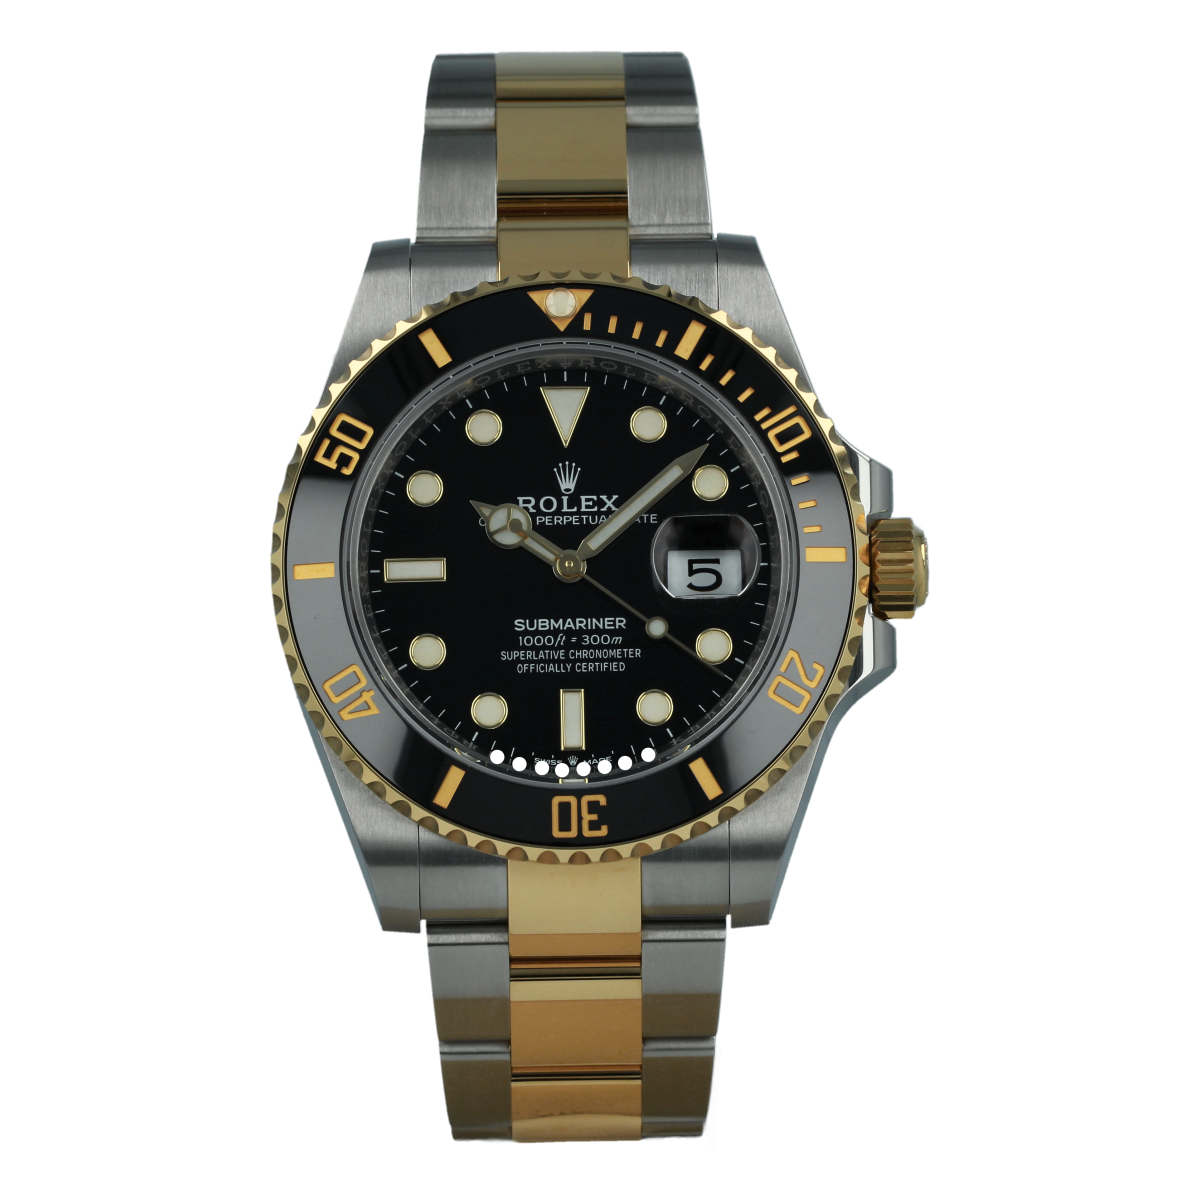 Rolex Submariner Date 126613LN Mixto *Nuevo a Estrenar* | Comprar reloj Rolex de segunda mano